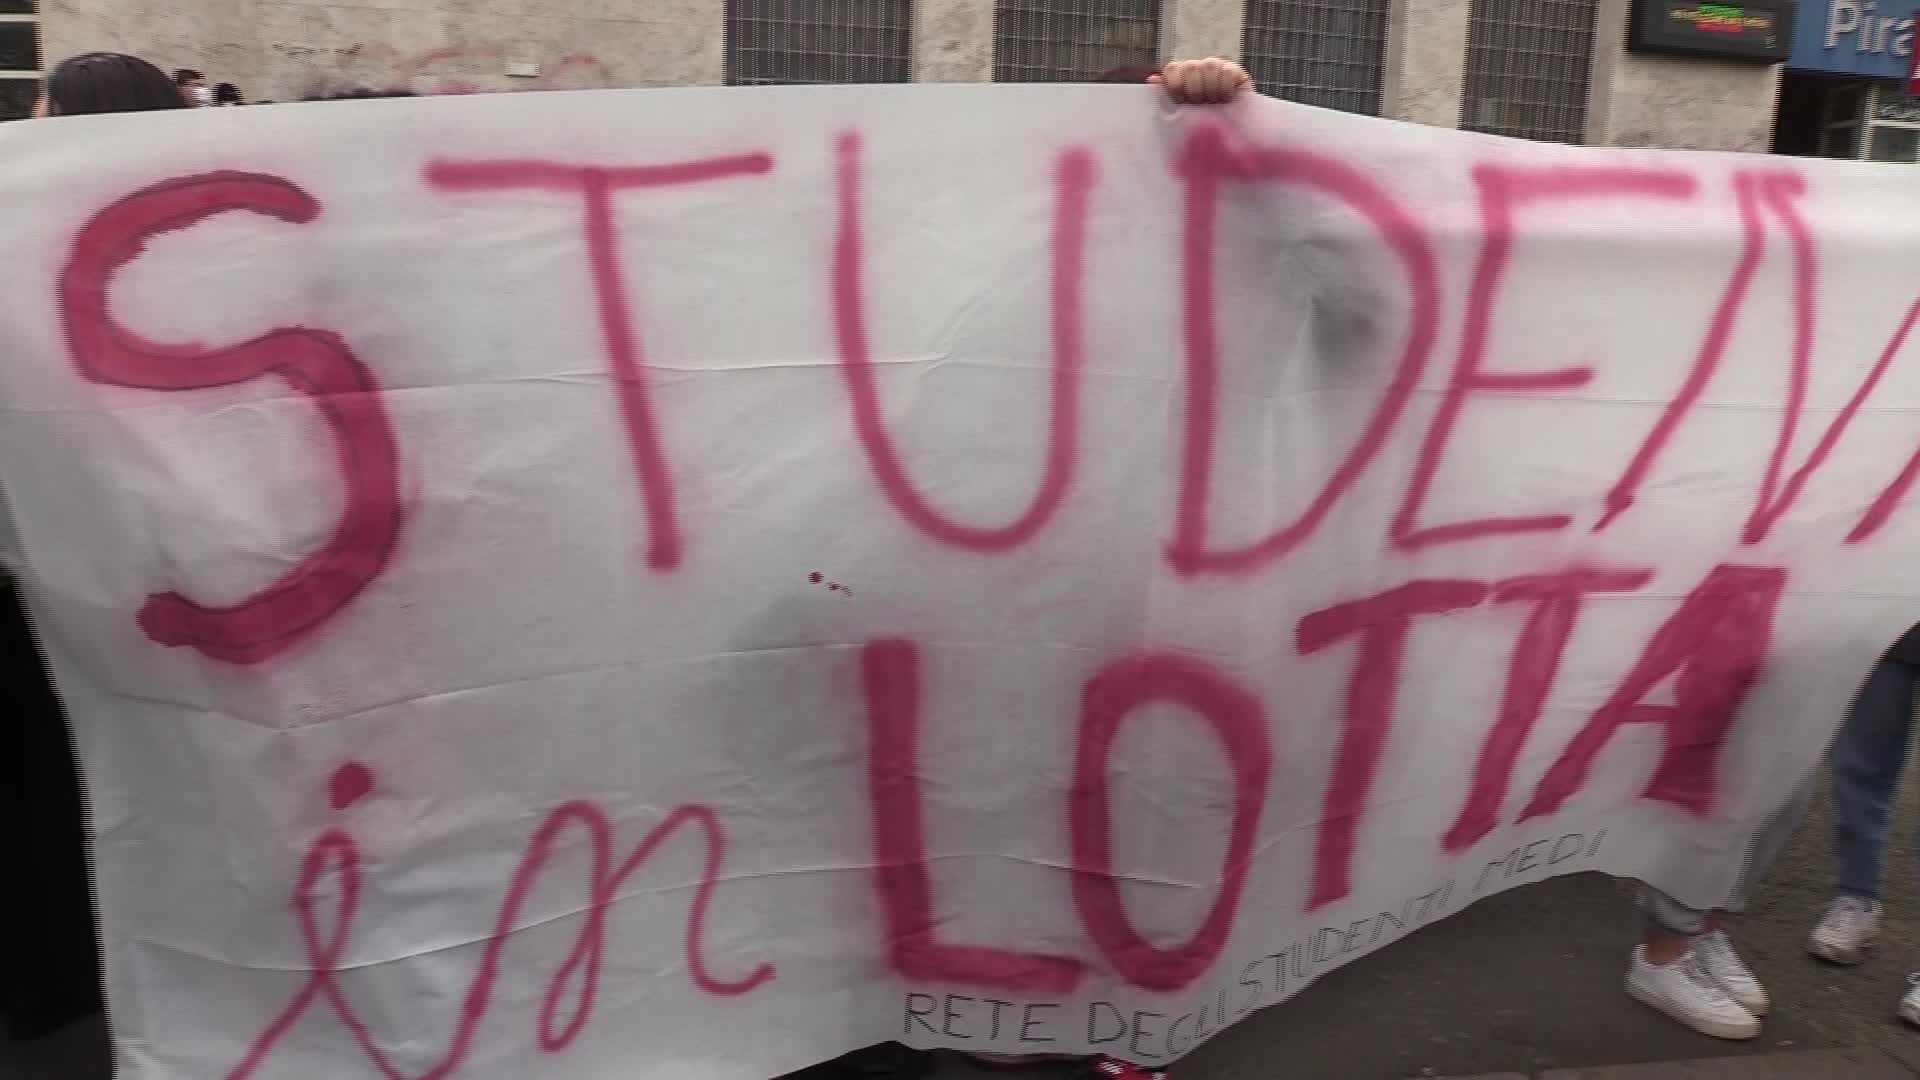 Milano, blitz degli studenti al Provveditorato: interviene la polizia